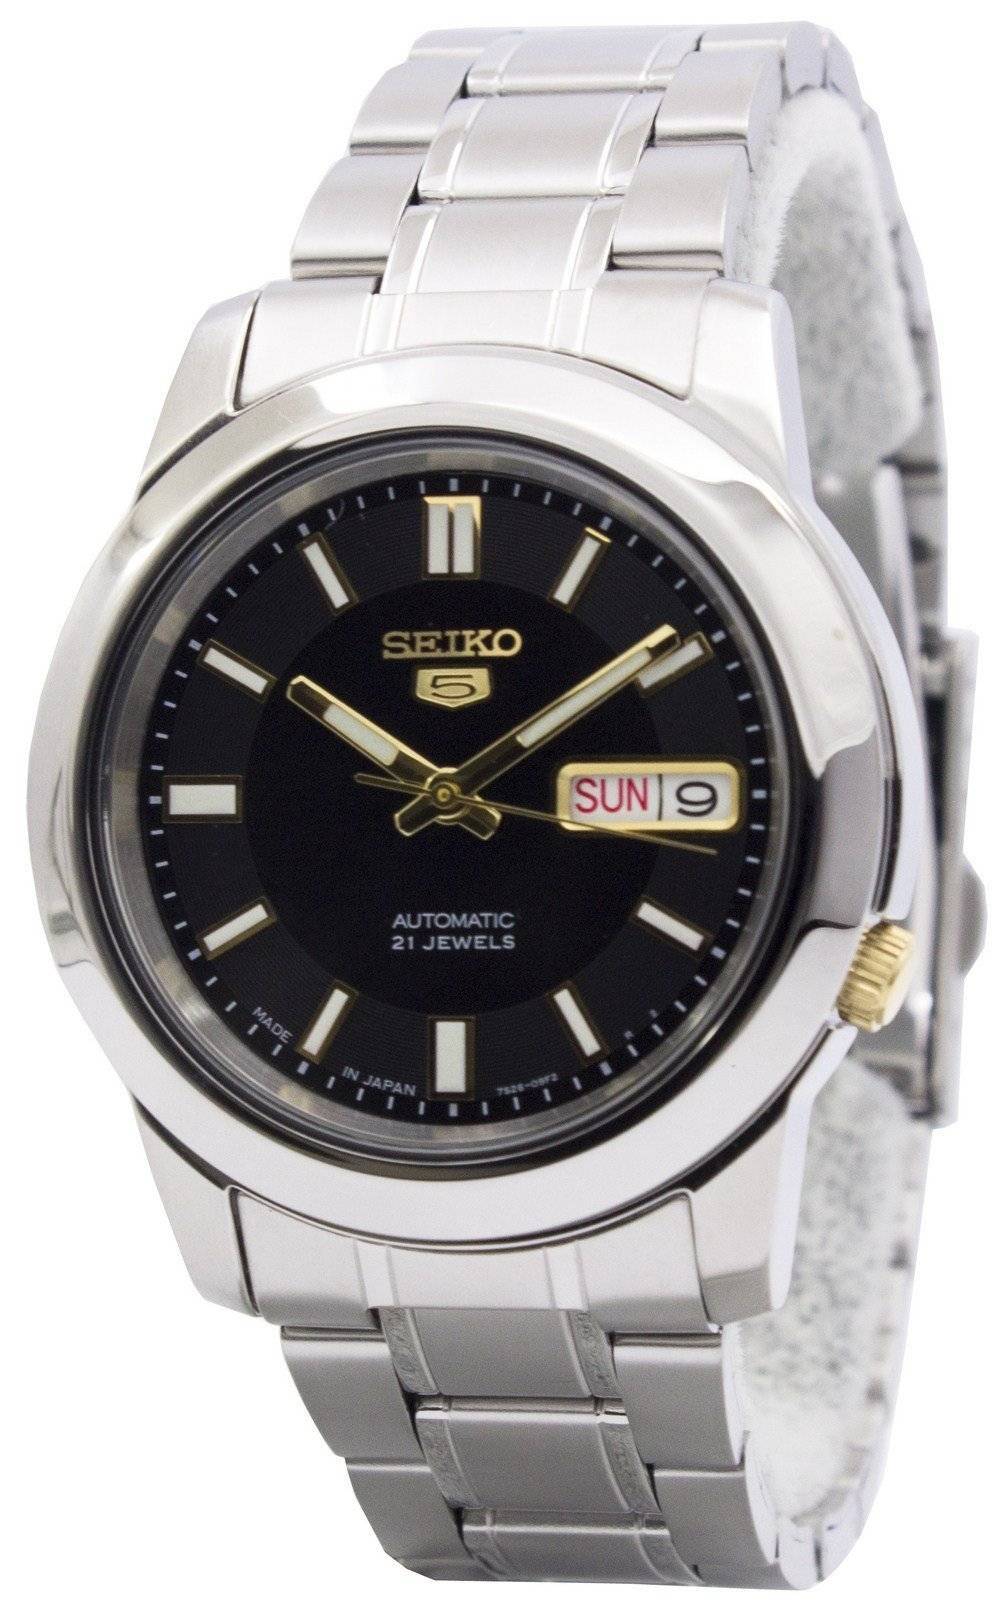 Seiko Automatic 21 Jewels Watch Price | lupon.gov.ph